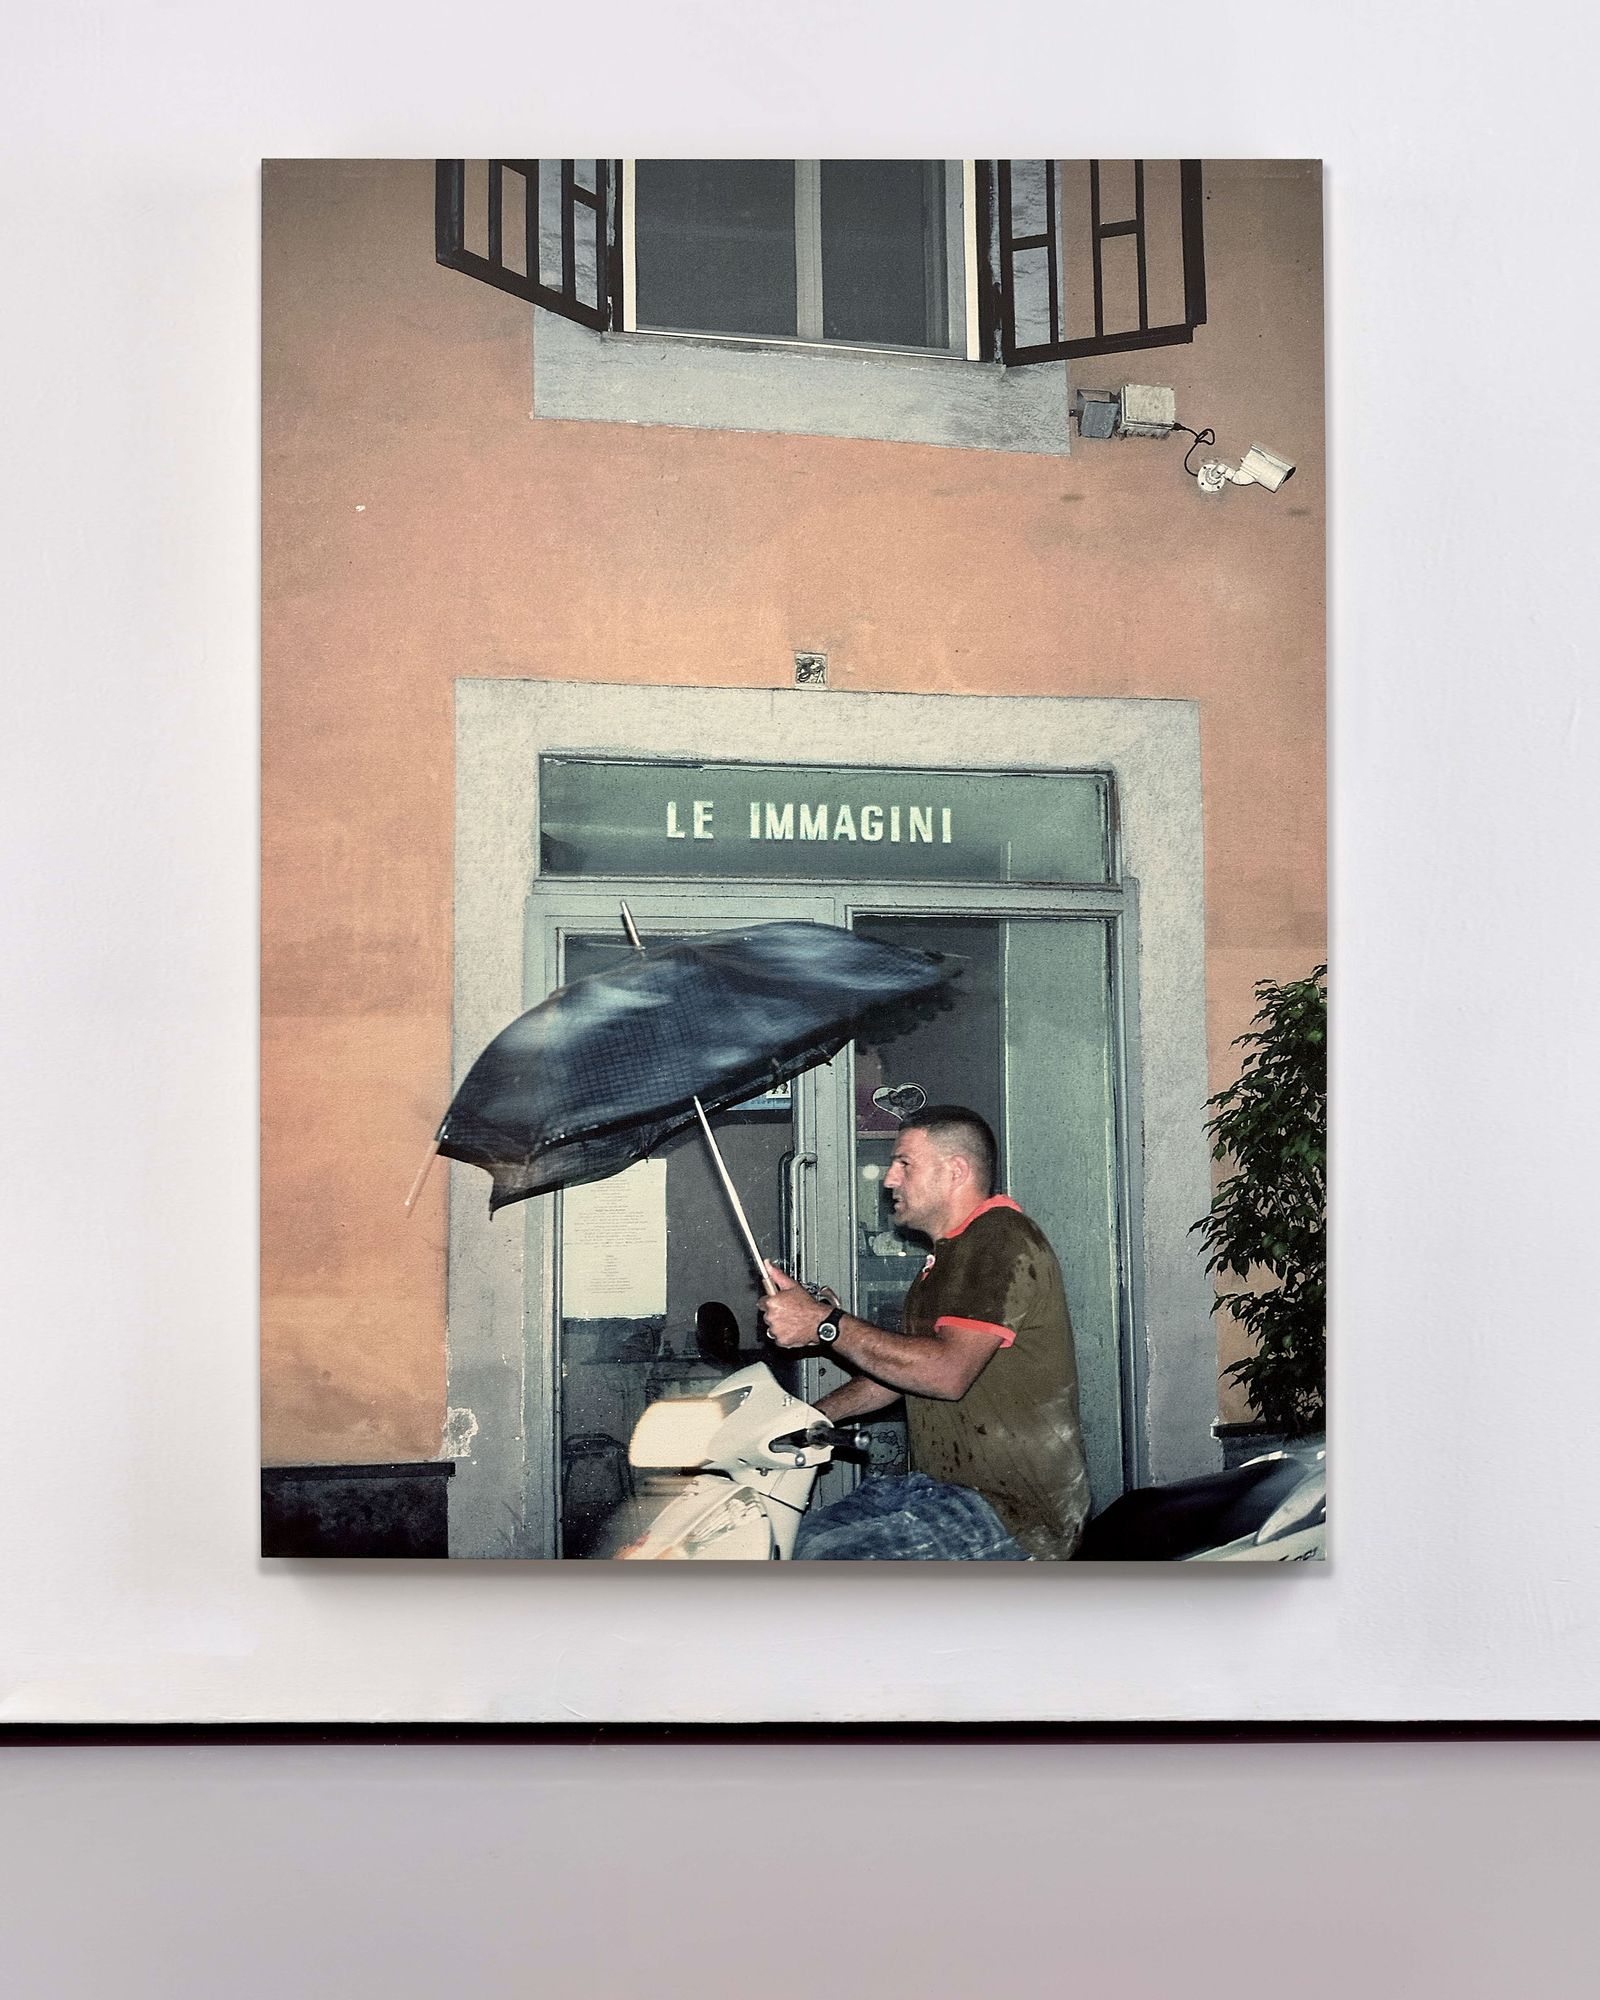 © Luca Massaro - Le Immagini, Napoli - Latex on unprimed linen canvas 180x125x5cm